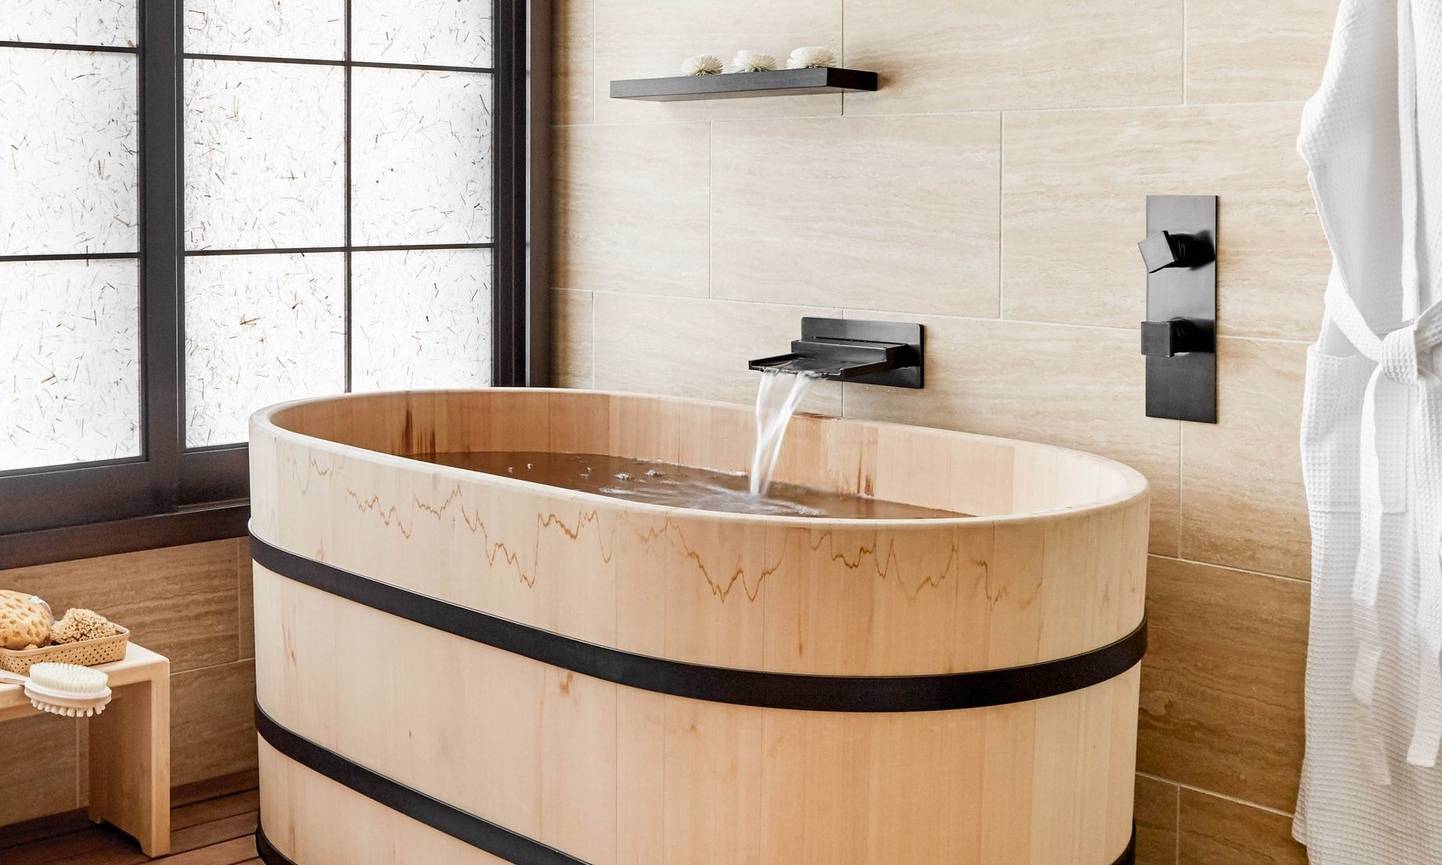 Ванны из дерева: недостатки и достоинства, фото в интерьере, деревянная ванна своими руками, видео